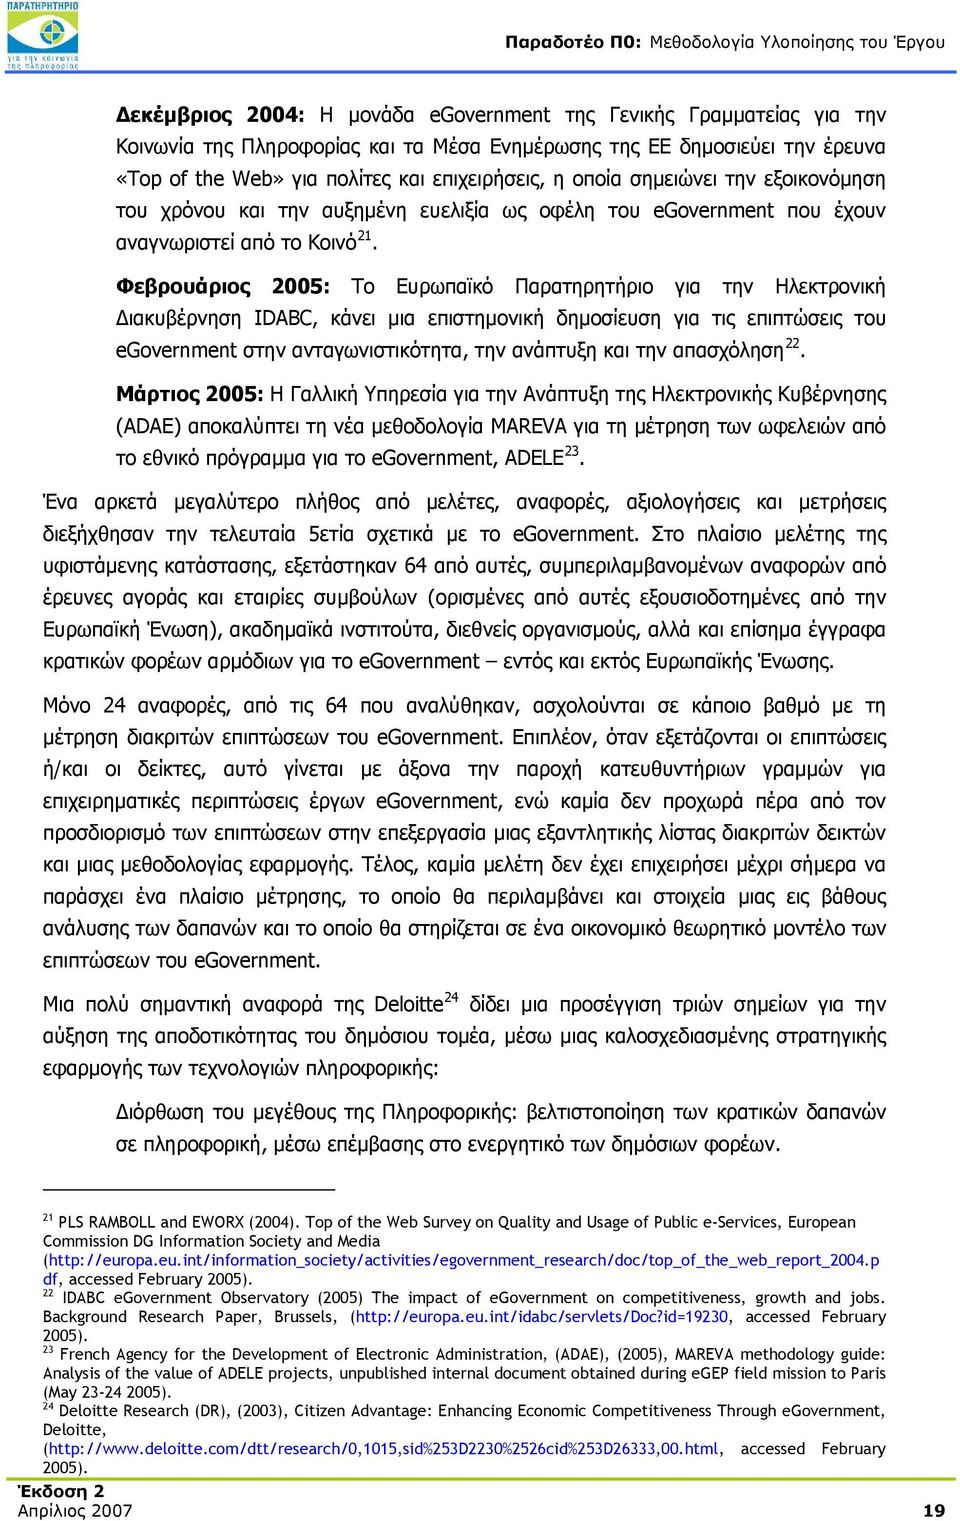 Φεβρουάριος 2005: Το Ευρωπαϊκό Παρατηρητήριο για την Ηλεκτρονική Διακυβέρνηση IDABC, κάνει μια επιστημονική δημοσίευση για τις επιπτώσεις του egovernment στην ανταγωνιστικότητα, την ανάπτυξη και την